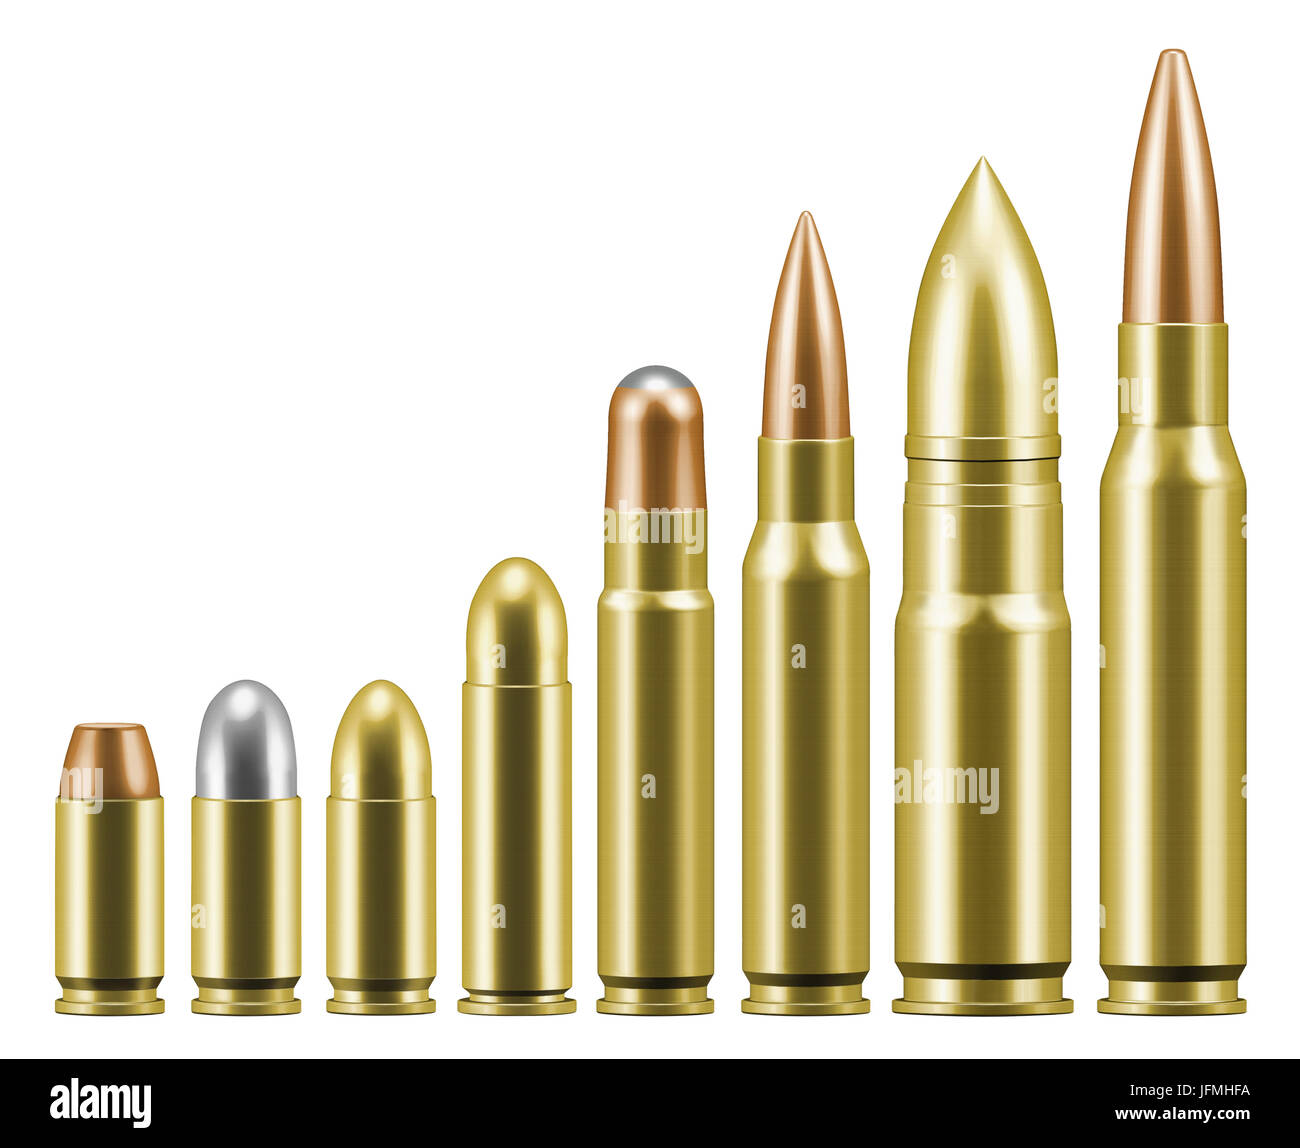 Linie von verschiedenen Kugeln Patronen für Pistolen und Gewehre Stockfoto